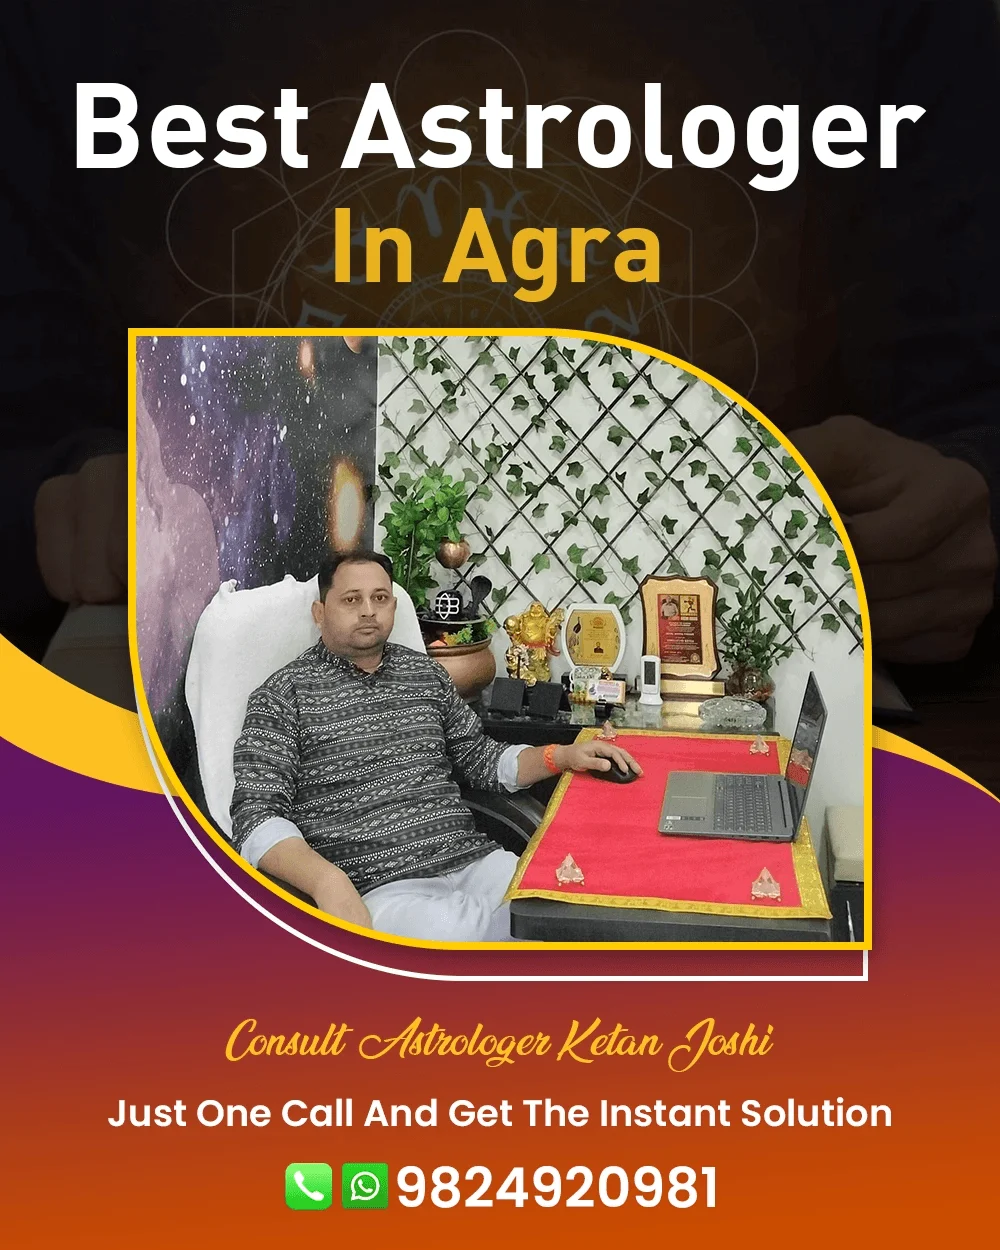 Best Astrologer In Agra